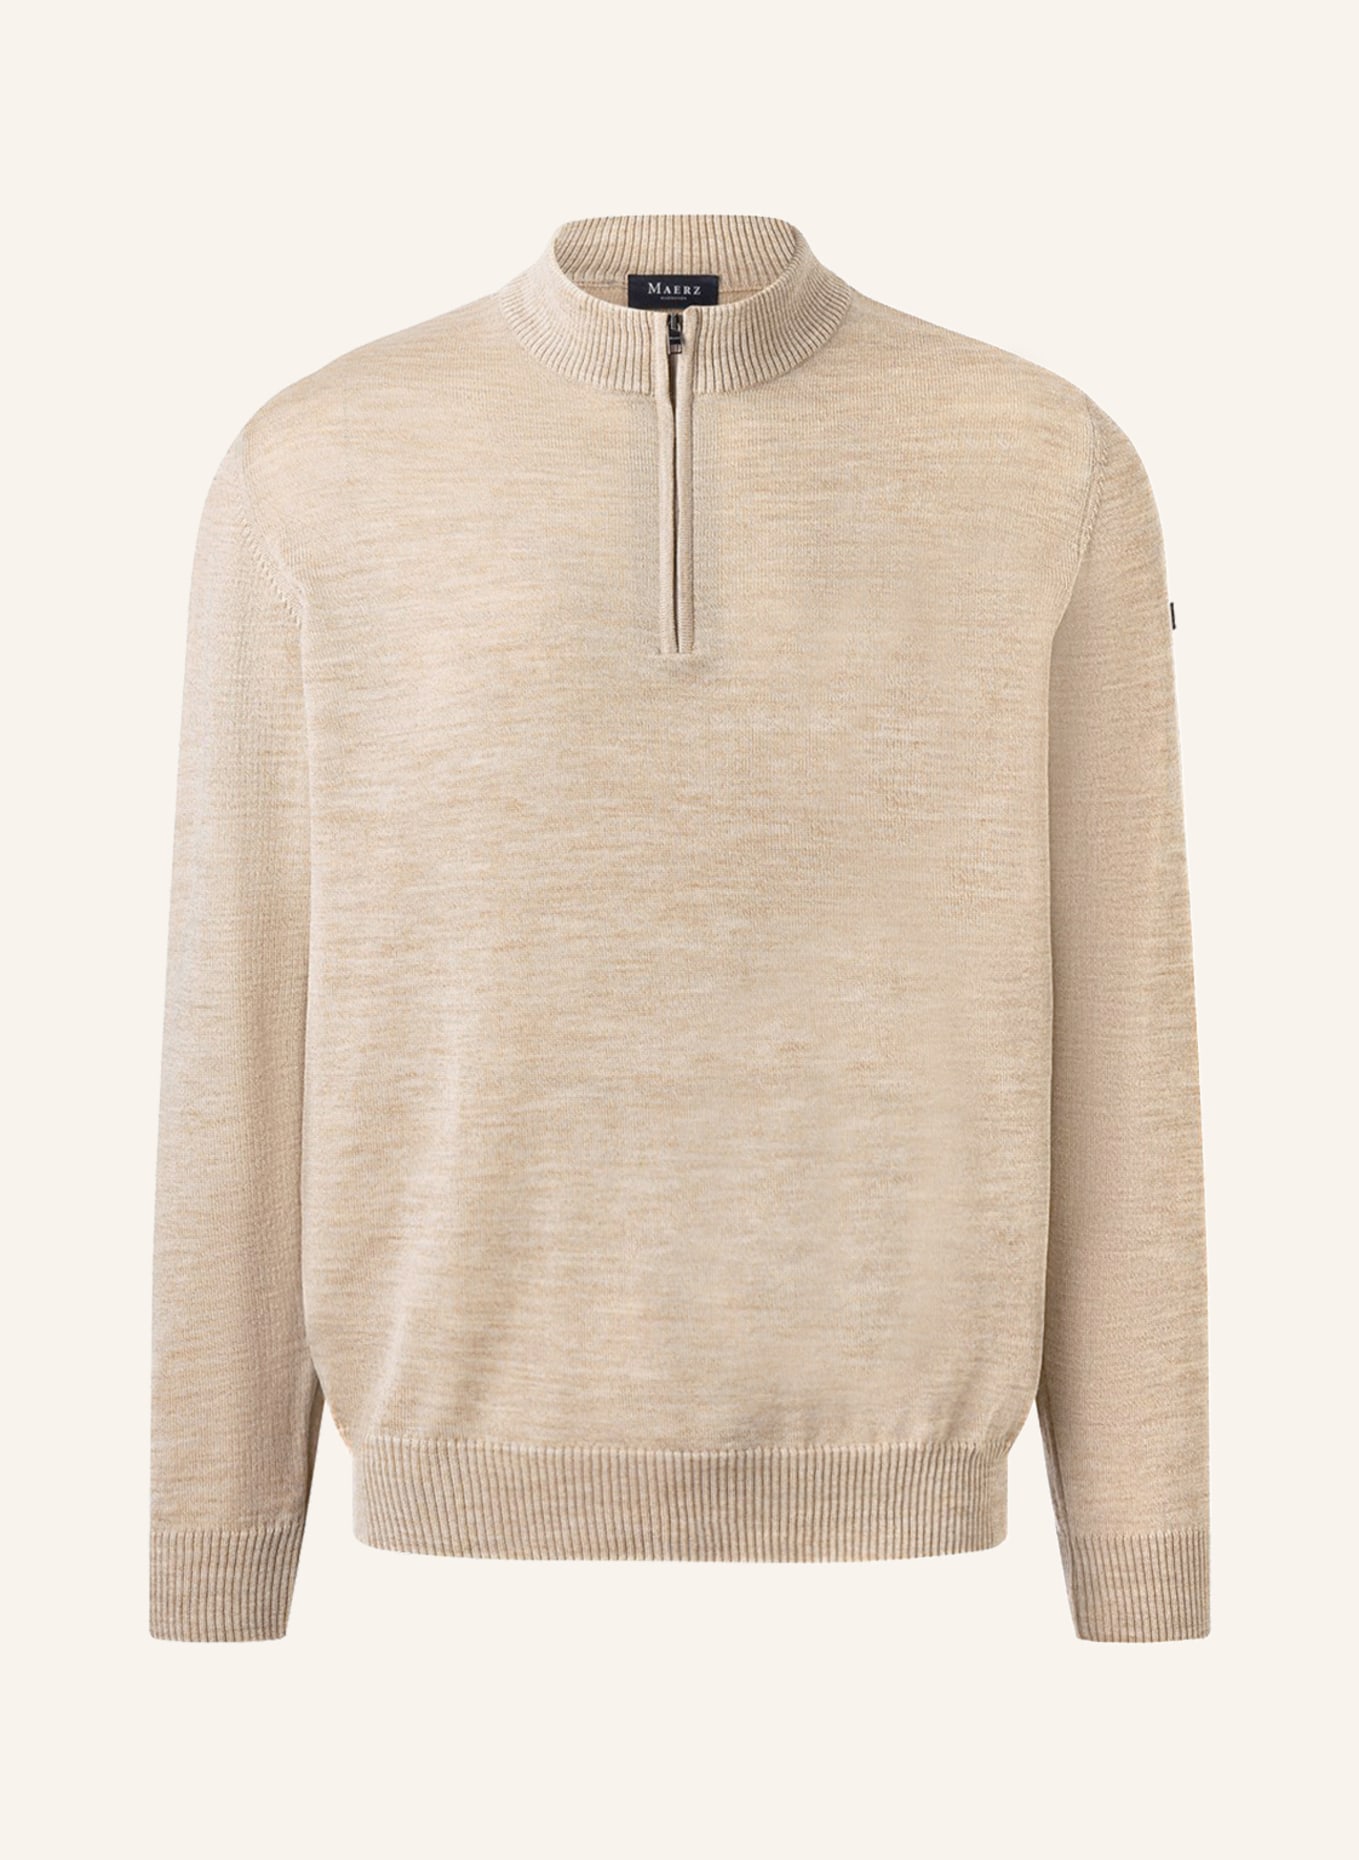 MAERZ MUENCHEN Half-zip sweater, Color: BEIGE (Image 1)